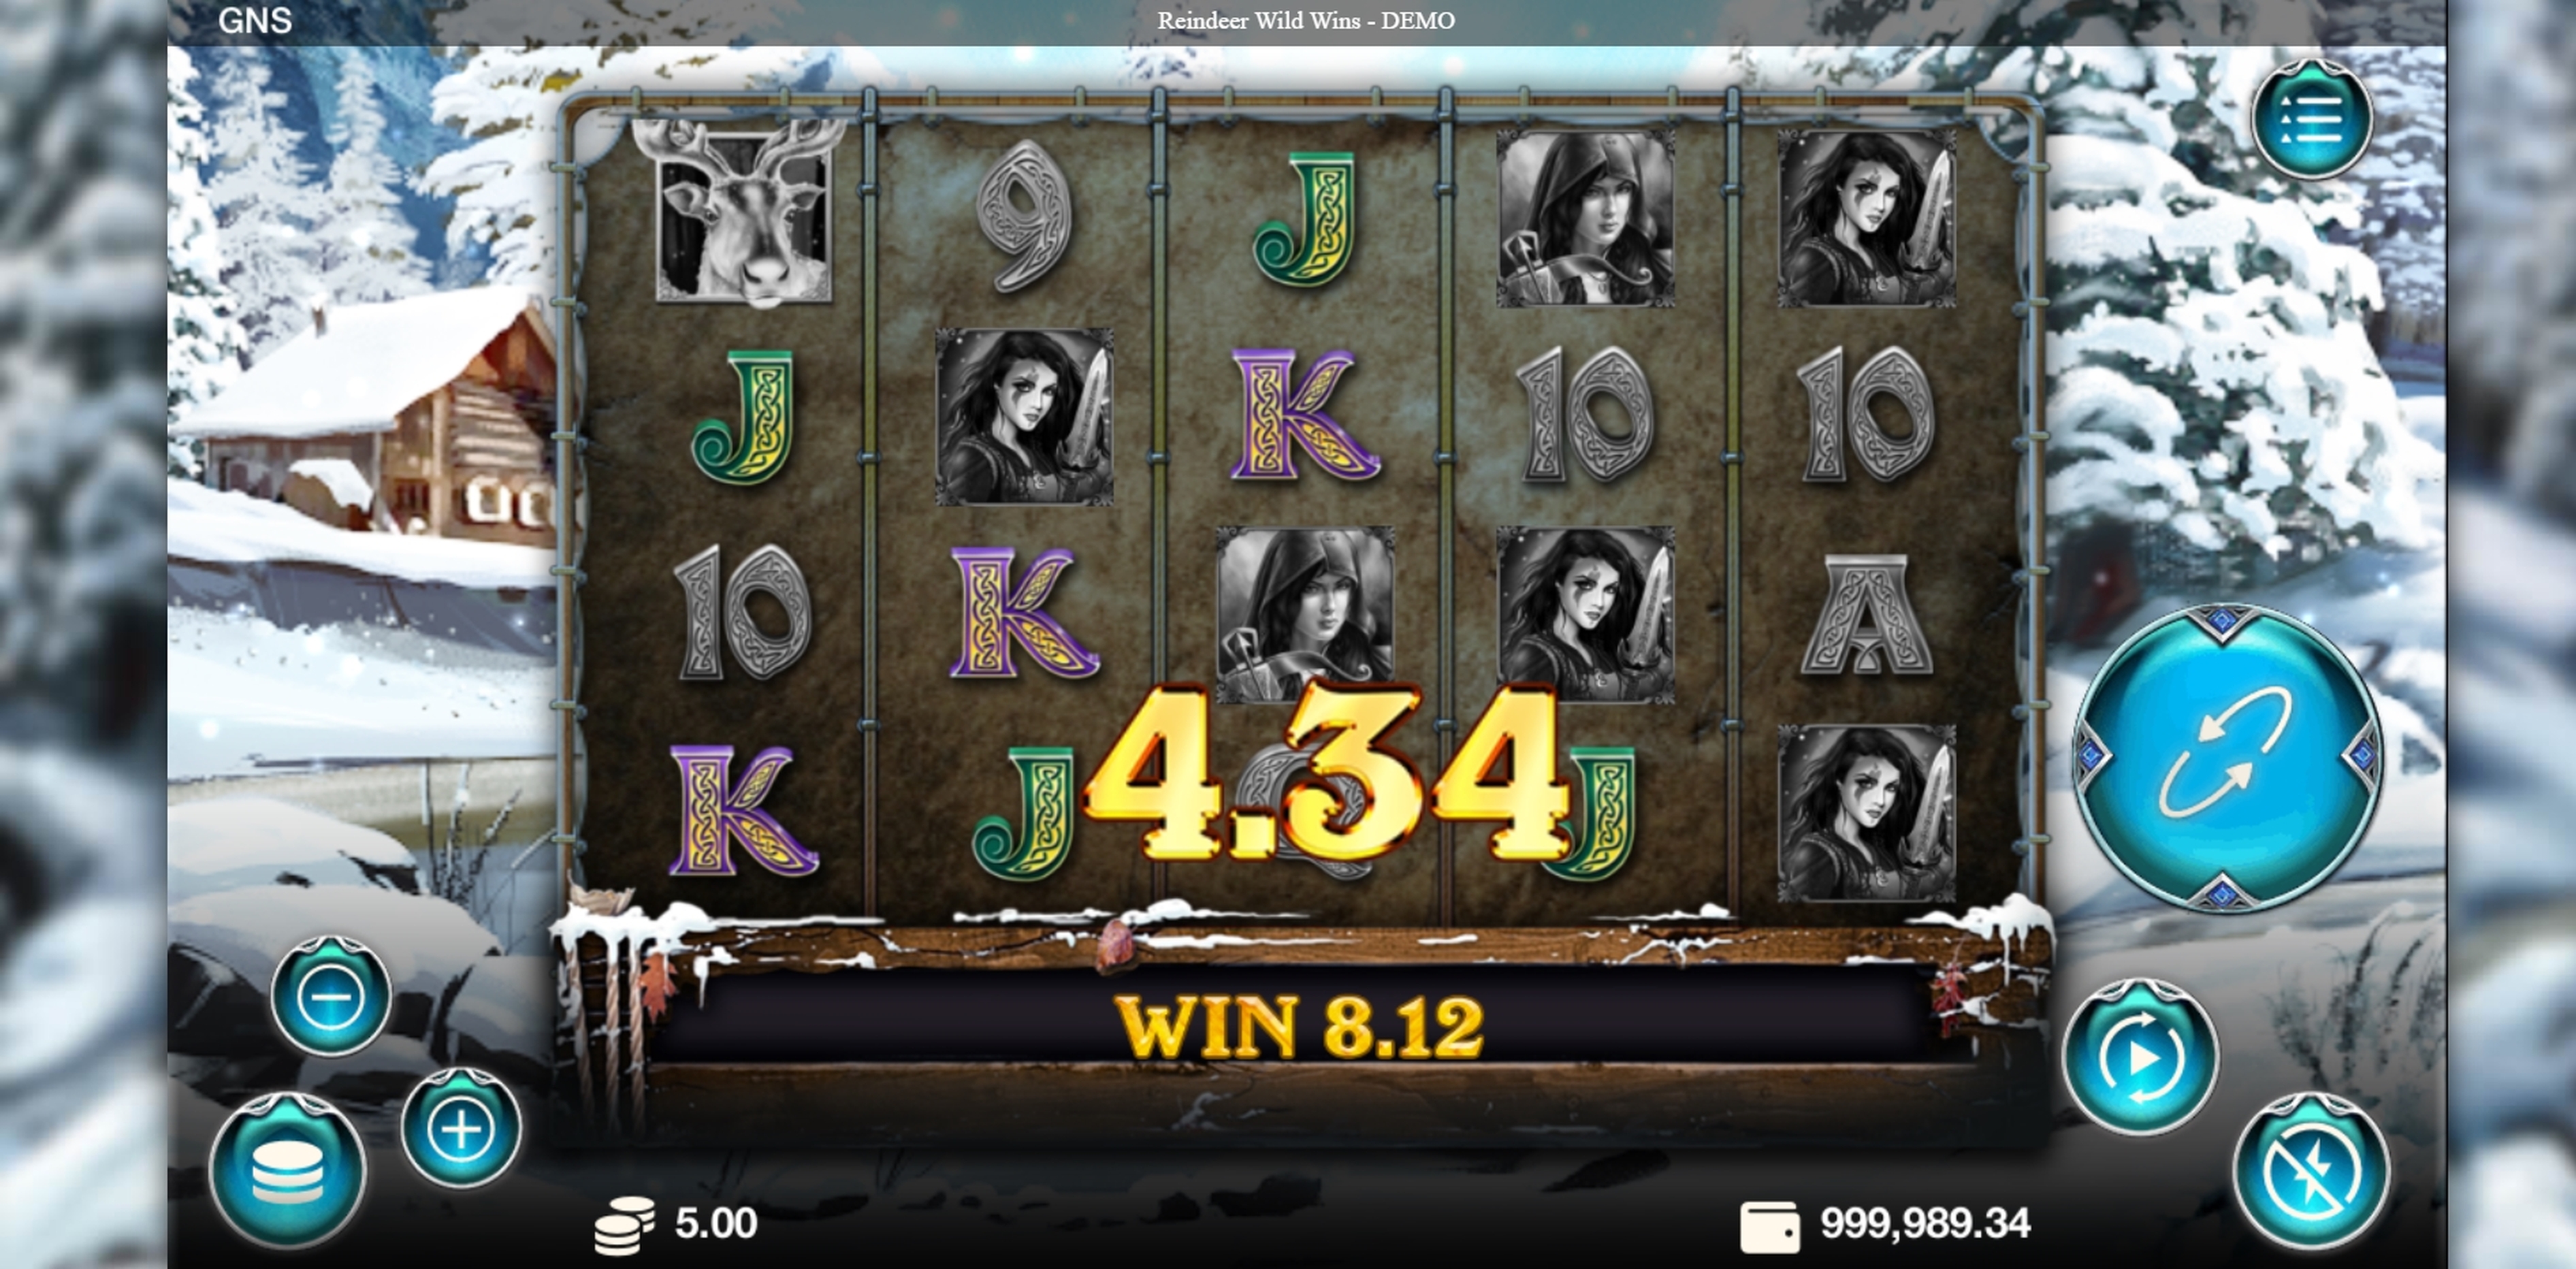 Win Money in Reindeer Wild Wins Free Slot Game by Genesis Gaming